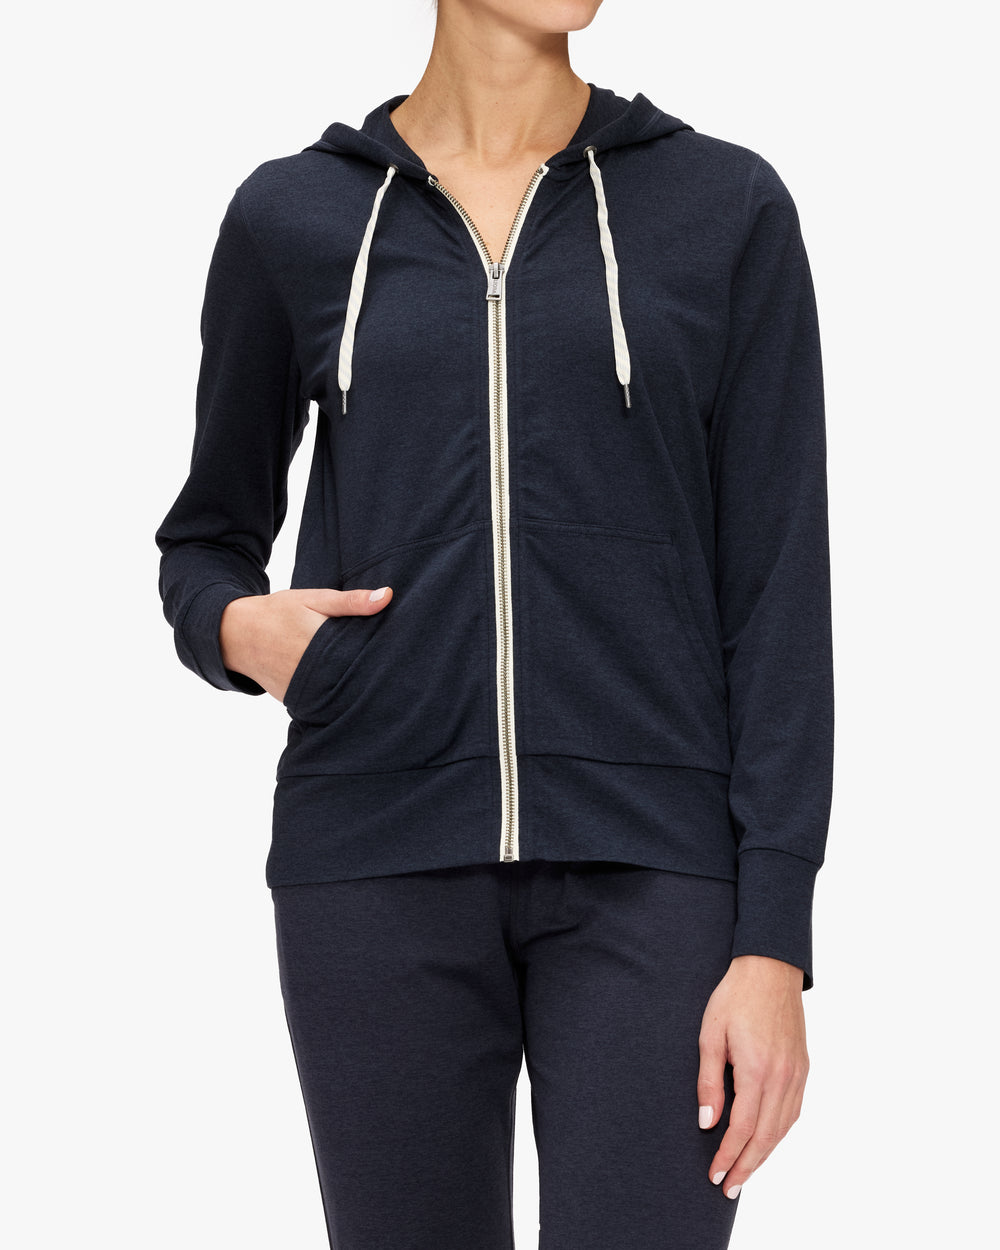 Calvin Klein Performance Gray Fleece Zip Up Jacket Women's Size Medium -  beyond exchange